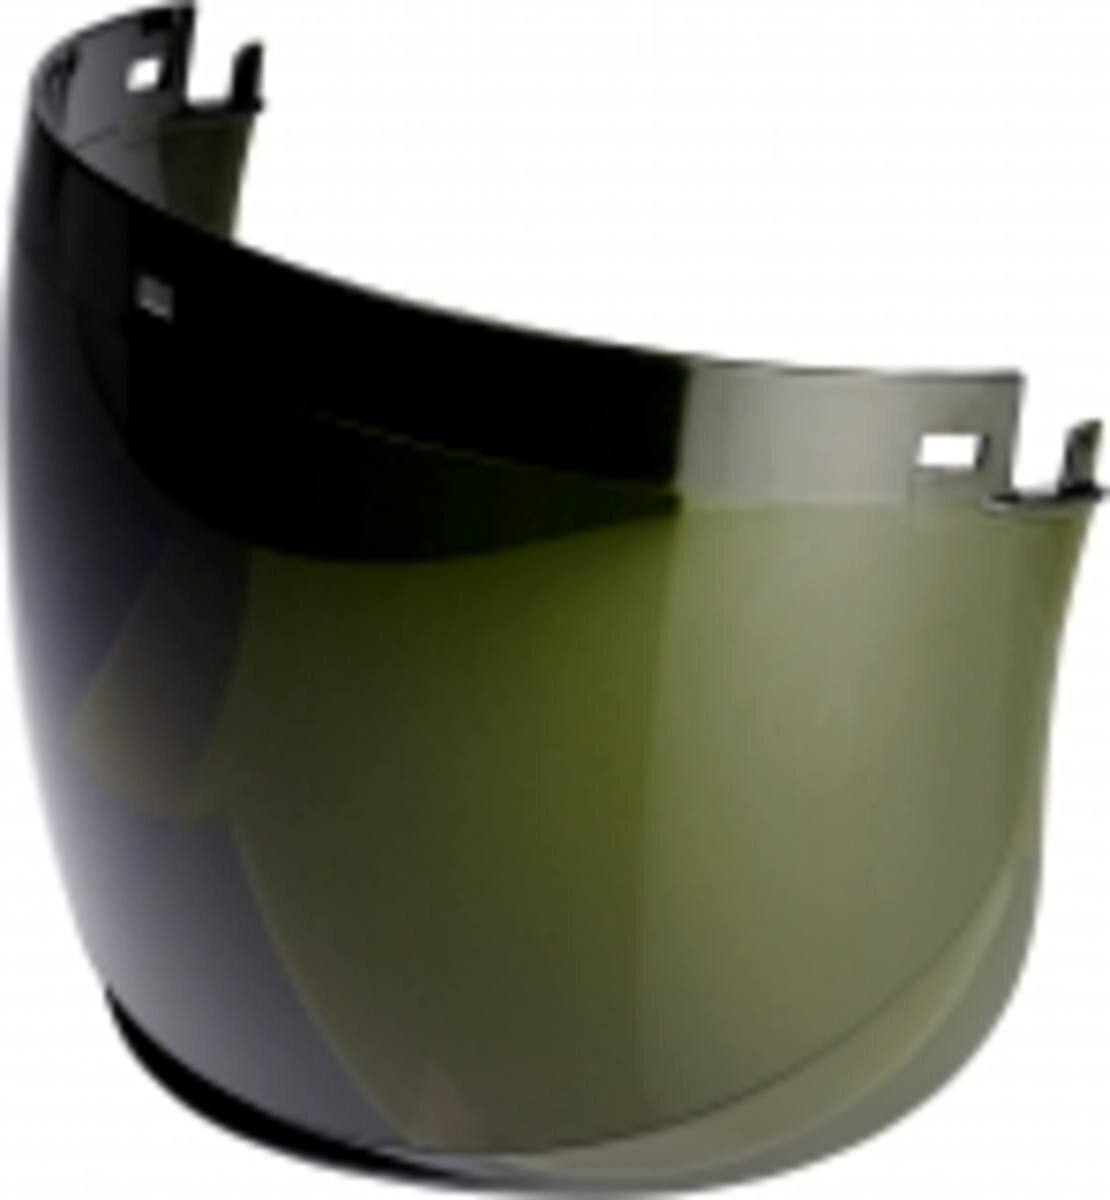 3M Visière 5E-11 Visière transparente polycarbonate vert IR 5.0 extrêmement résistante aux chocs épaisseur : 1,5mm, poids : 138g vendu séparément : support V5 pour casques de protection 3M